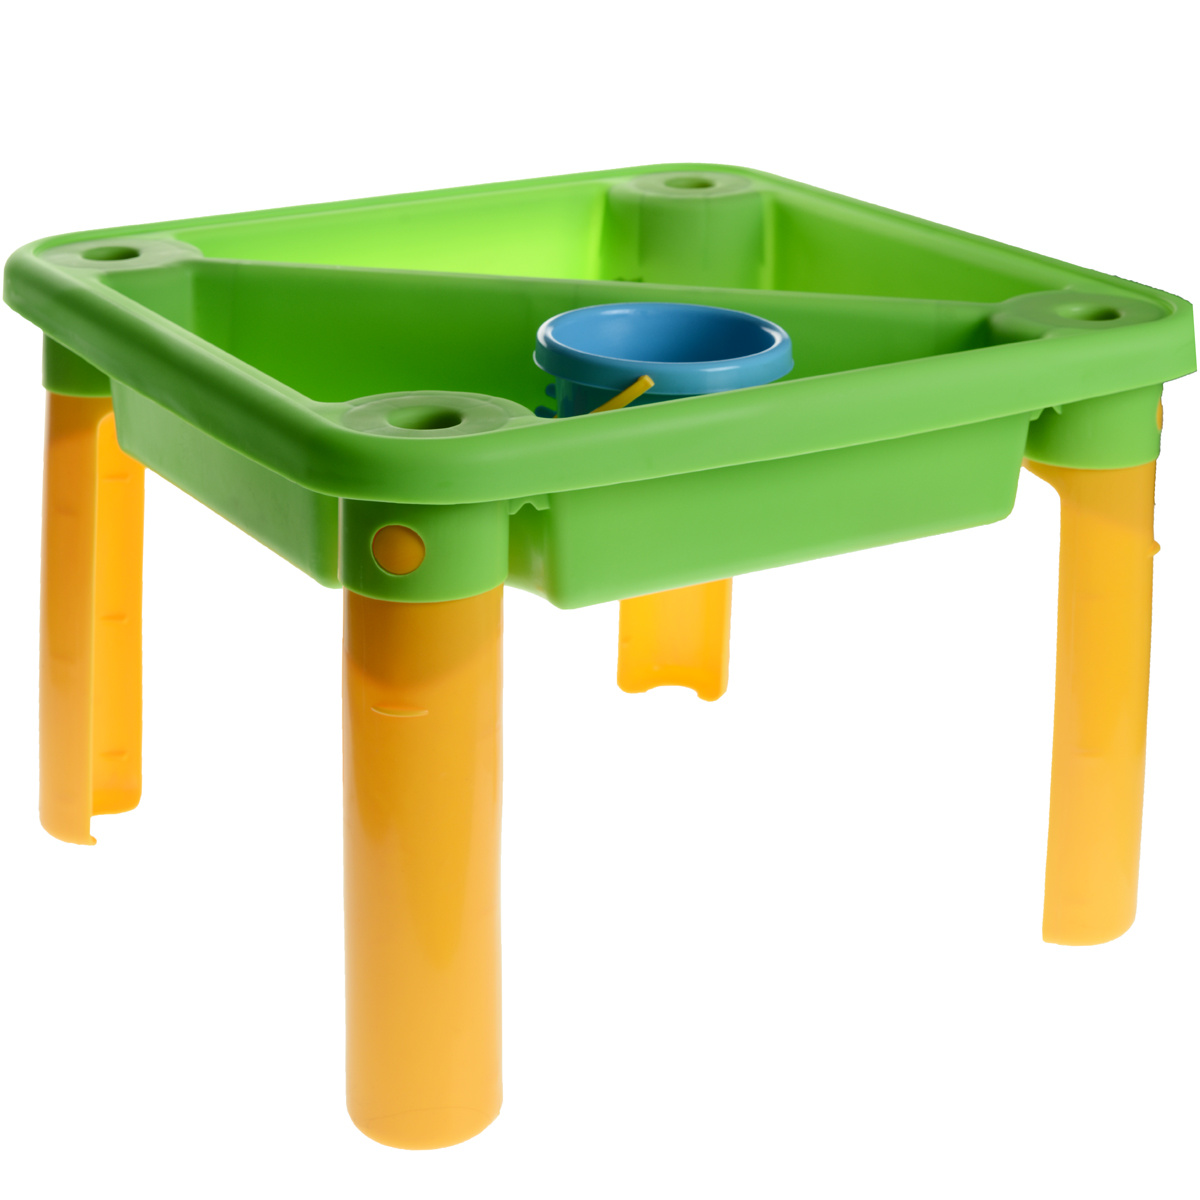 Столик для воды. WPL kt2001-00c стол для игр с водой и песком l89см x w63см x h44-58см, прозрачный. Столик для песка и воды. Столик для игры с песком. Игровой стол вода песок.